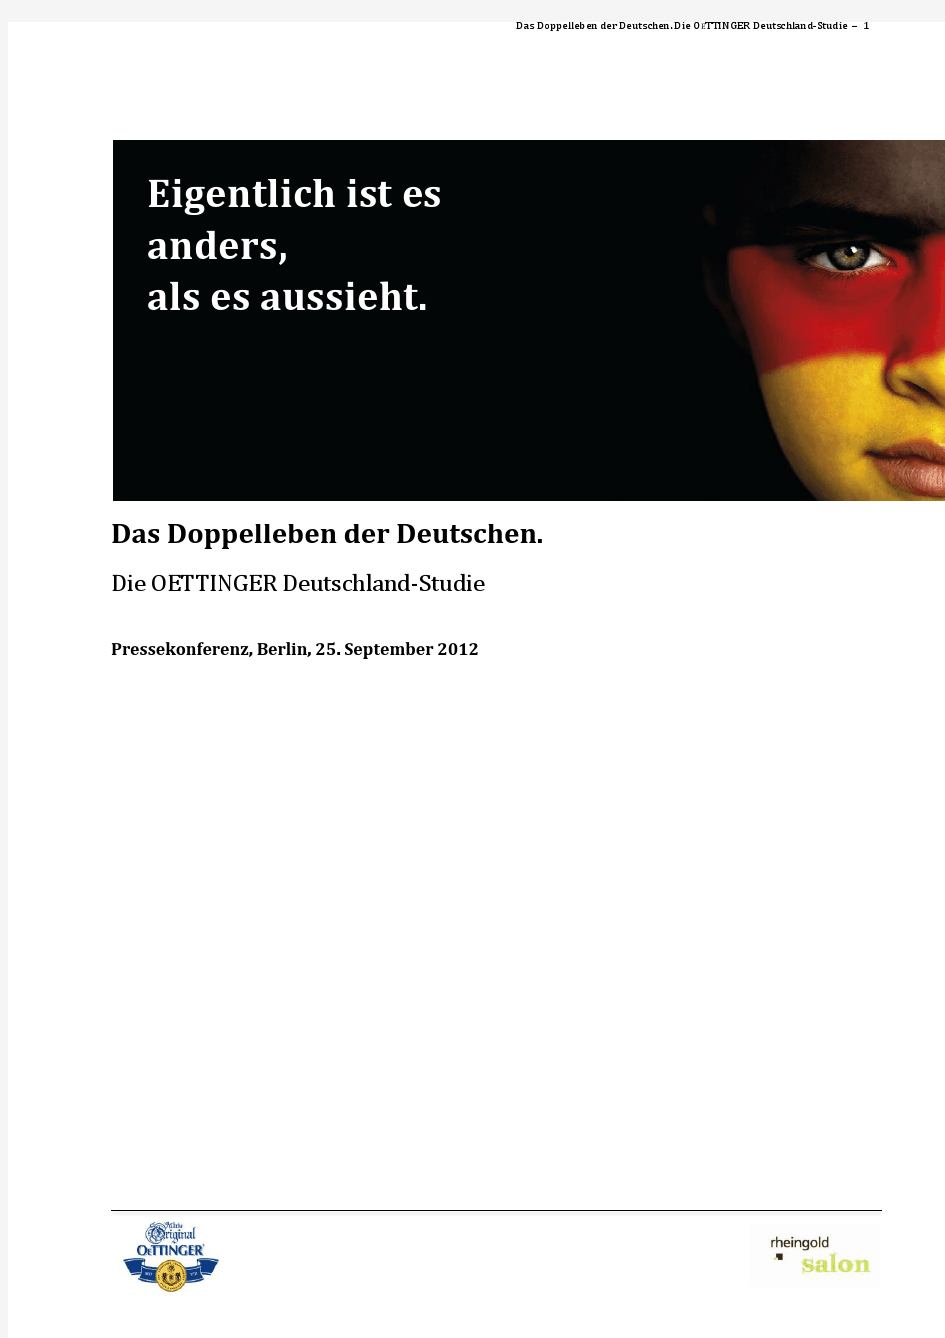 Deutschland_Studie_reader_2012-09-19